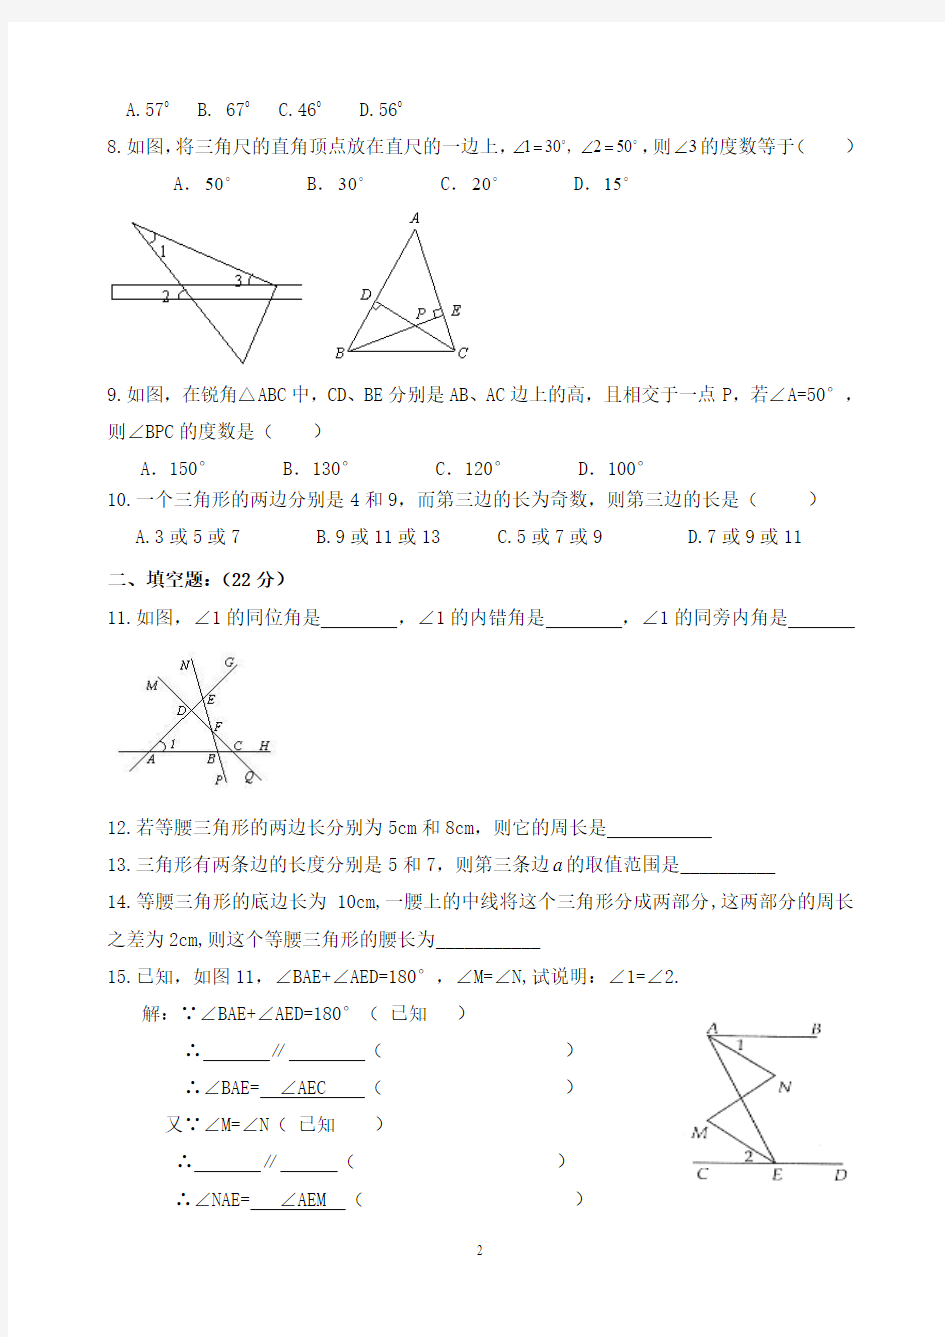 孟良崮中学七年级_下册平行线与三角形_测试题2.15